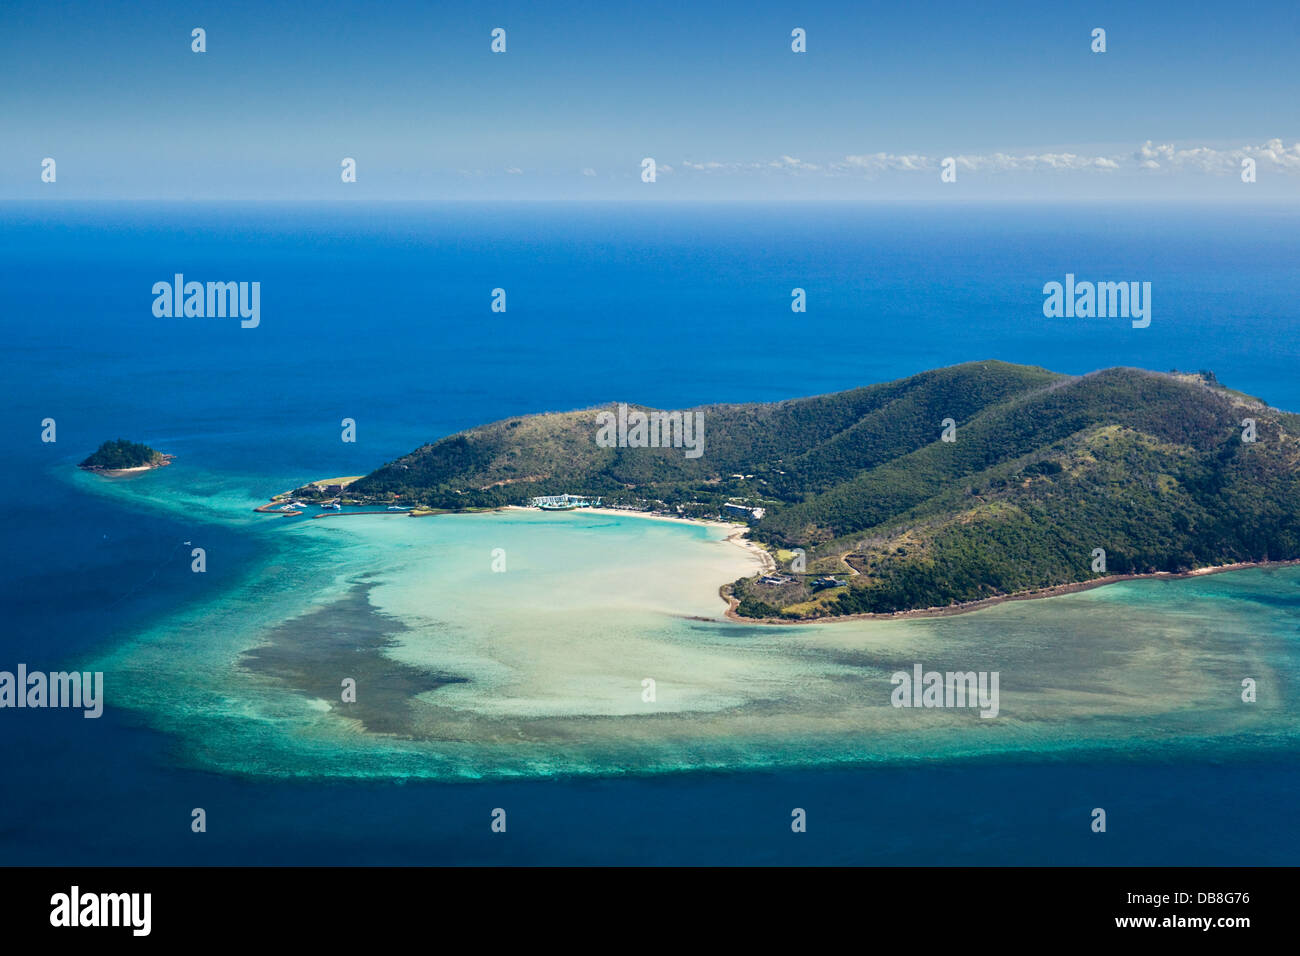 Luftaufnahme von Hayman Island - eine private Insel bekannt für seine Luxus-Resort. Whitsunday Islands, Queensland, Australien Stockfoto